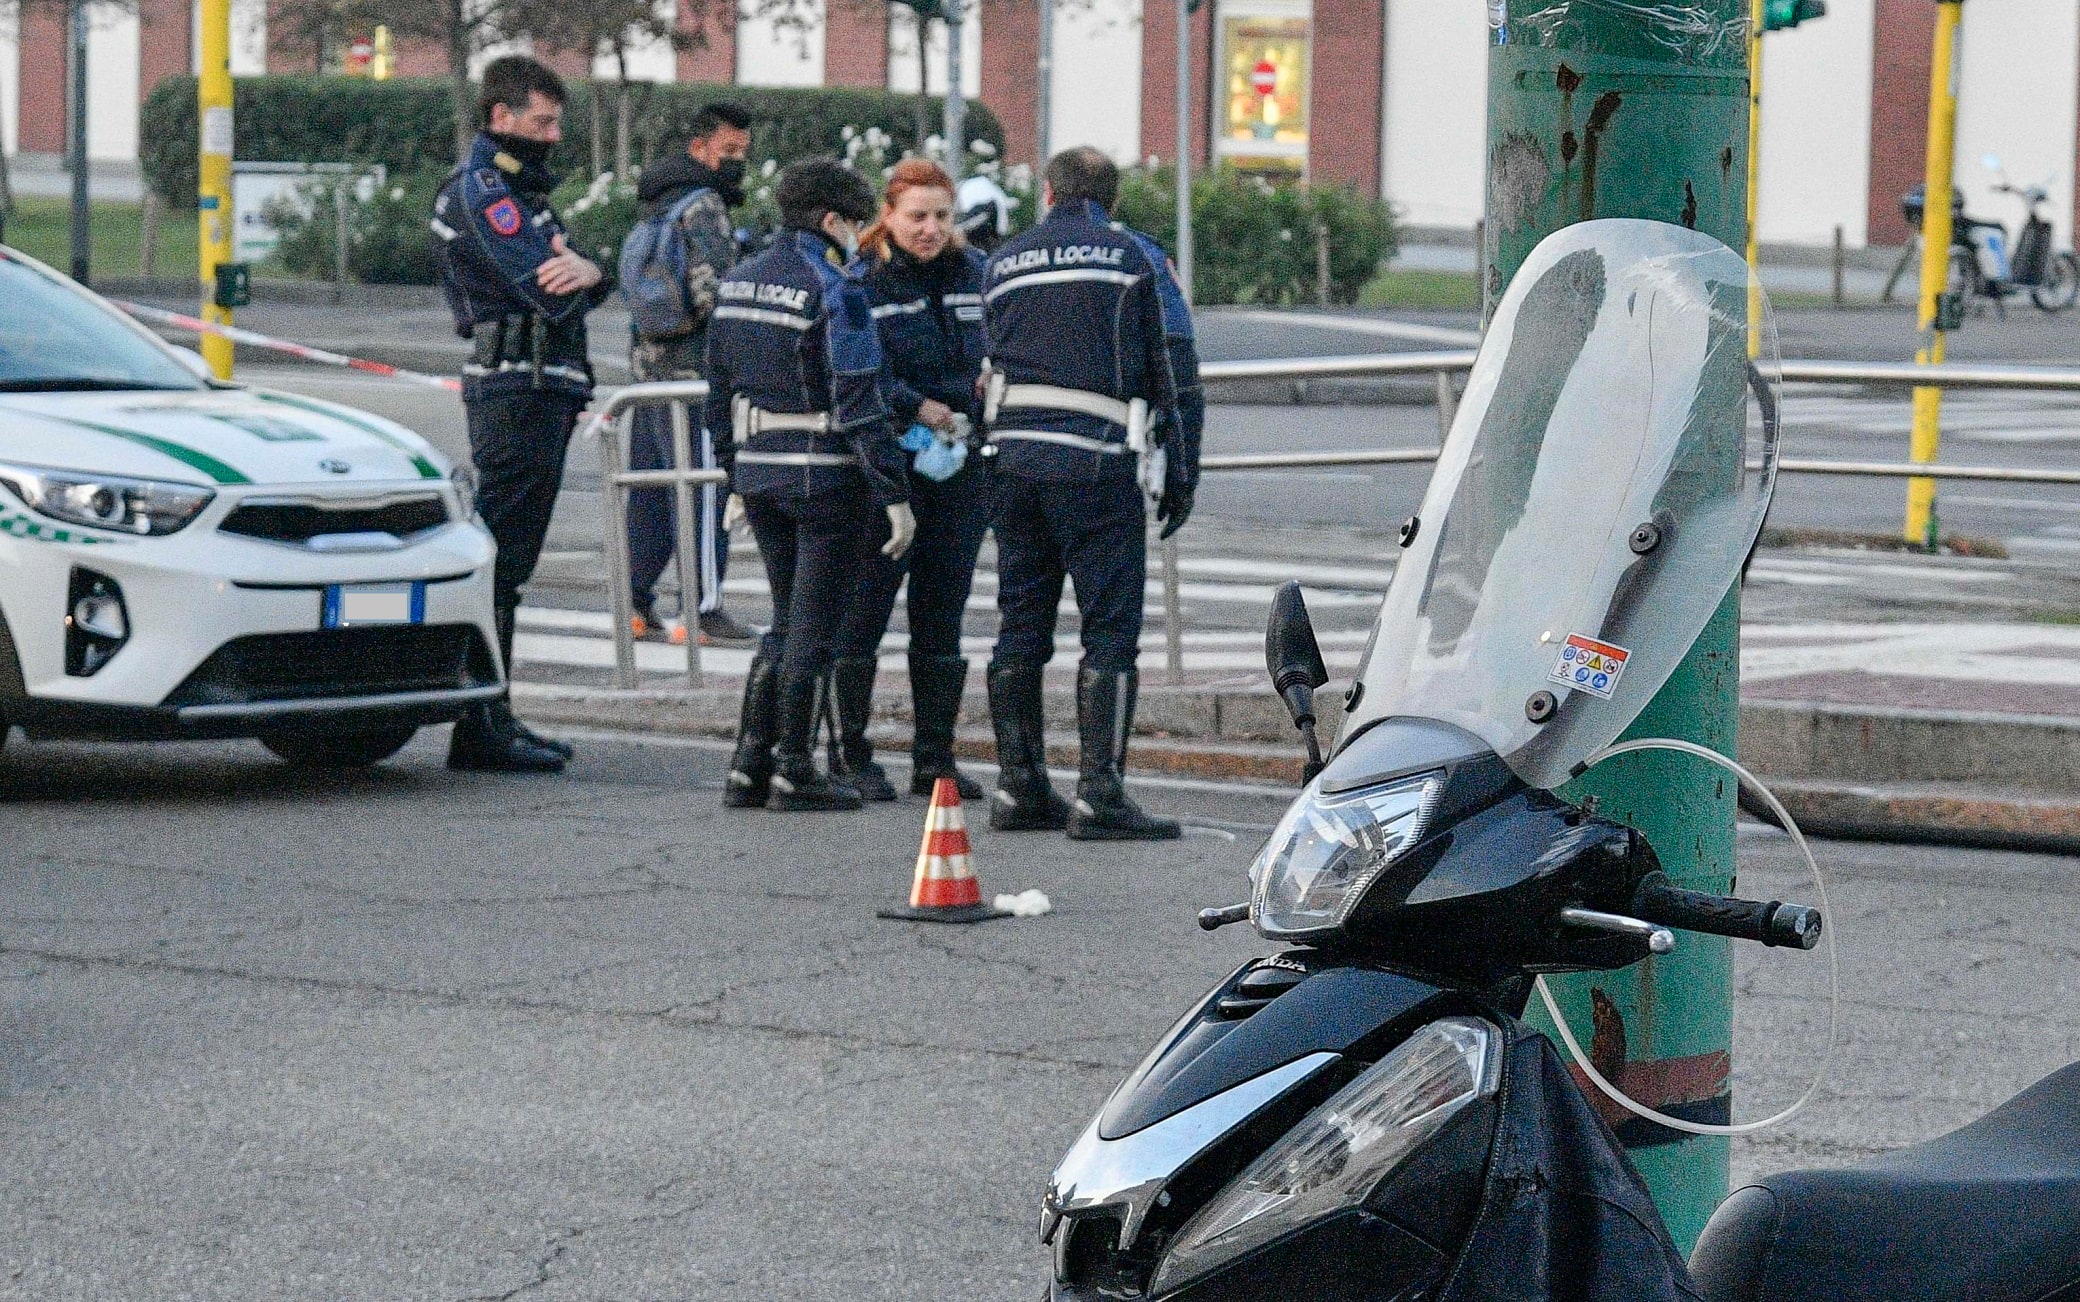 Gli agenti della Polizia locale sul luogo dell'incidente mortale, Milano, 27 ottobre 2021. Un motociclista di 56 anni è morto poco prima delle 6 nello scontro con un altro mezzo, probabilmente pesante, il cui conducente non si è fermato per i soccorsi in via Ripamonti a Milano. Le indagini per risalire a chi era alla guida del mezzo sono affidate agli agenti della Polizia locale.  ANSA/ ANDREA FASANI